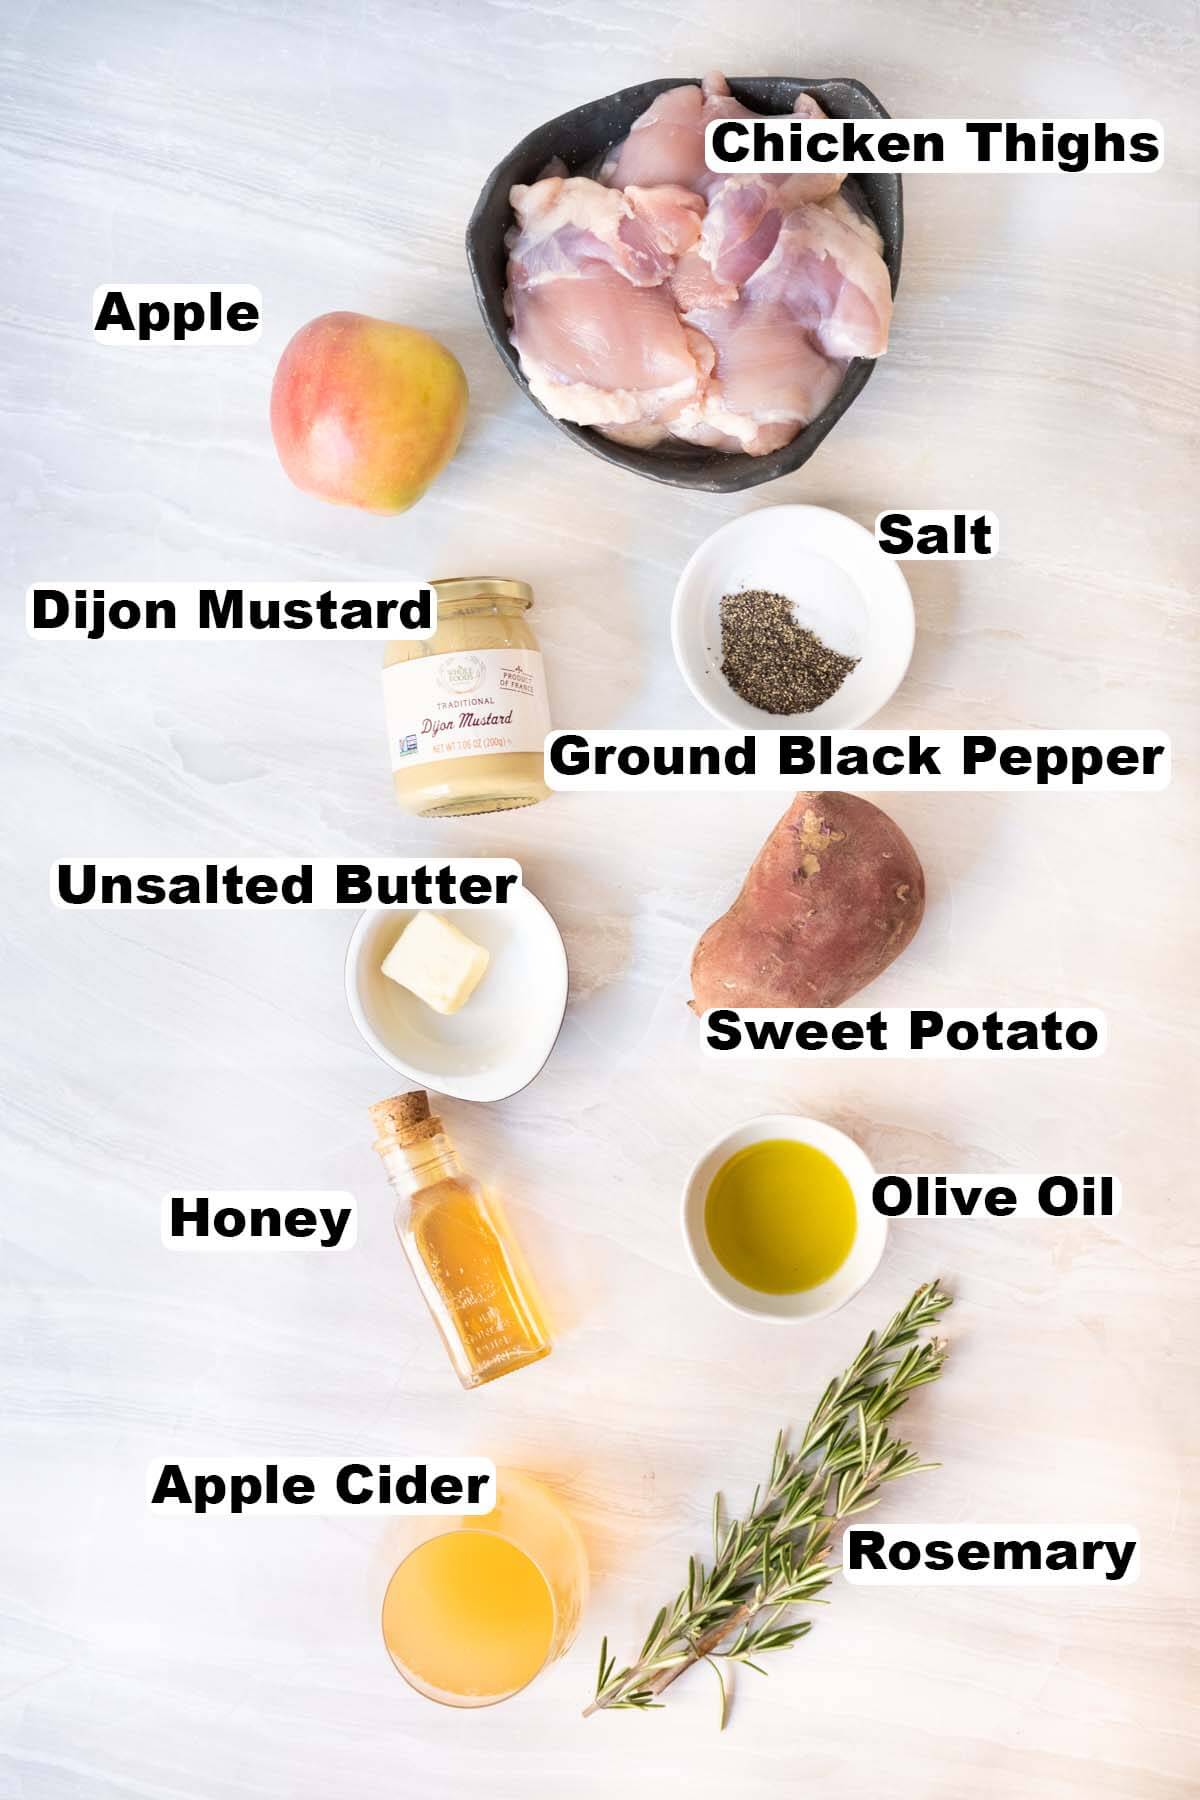 Apple cider glazed chicken ingredients. 